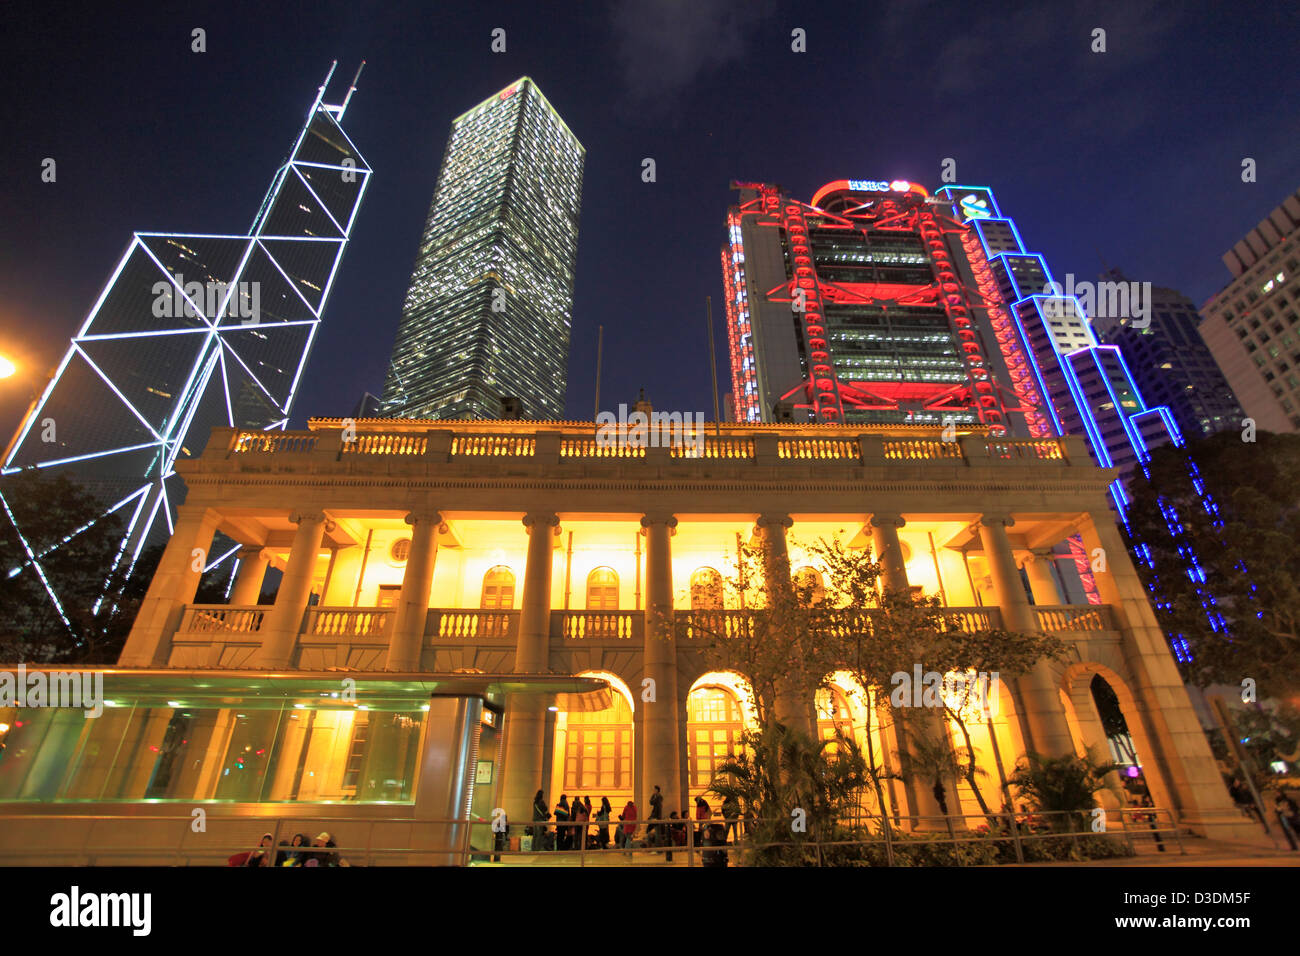 China, Hong Kong, Central district at night, Bank of China, Citibank, Legislative Council, HSBC Bank Stock Photo